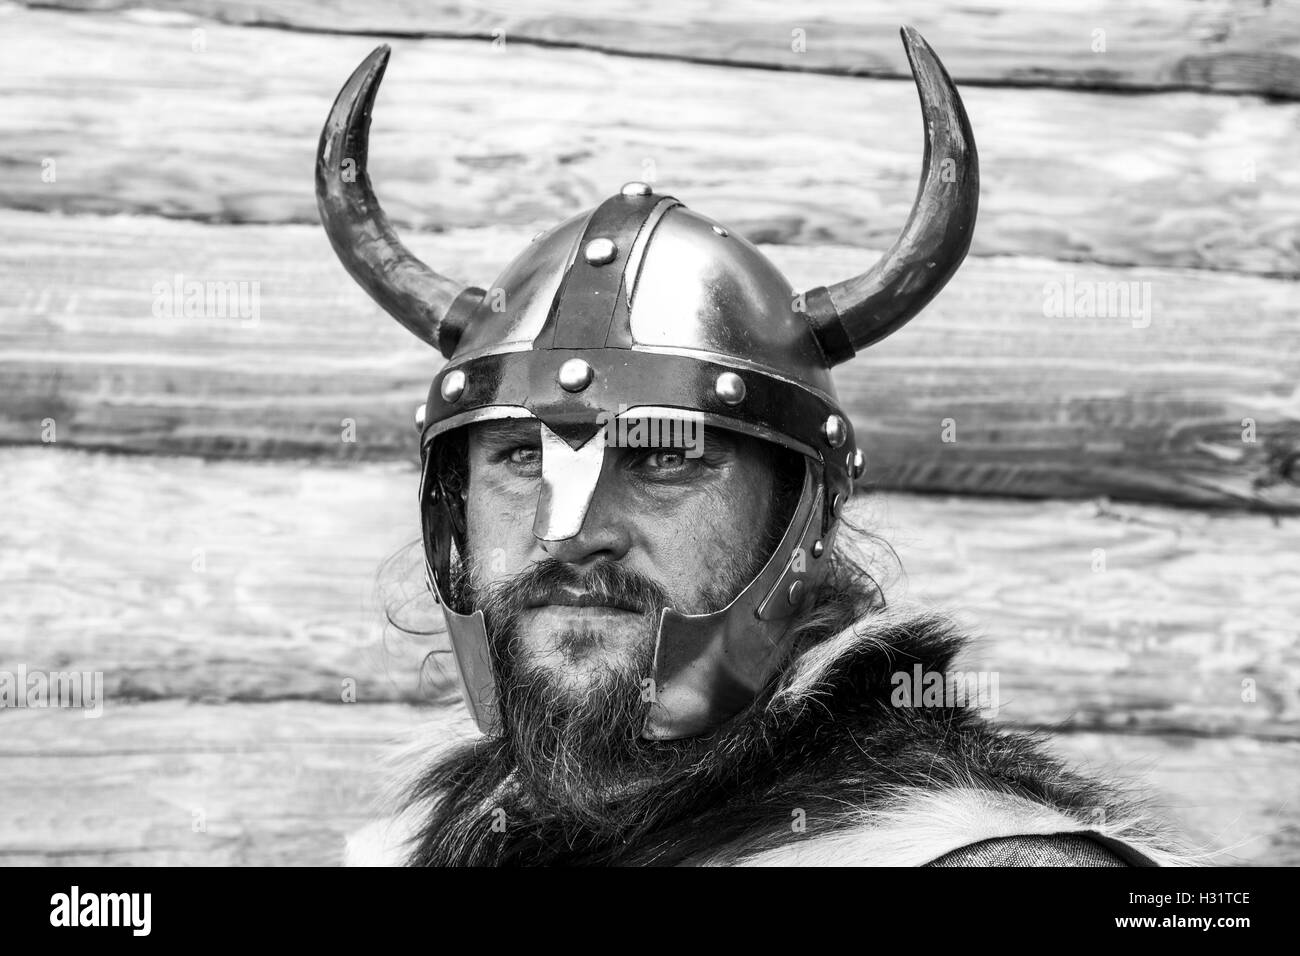 Ein Porträt von Viking, schwarz / weiß Fotografie. Stockfoto